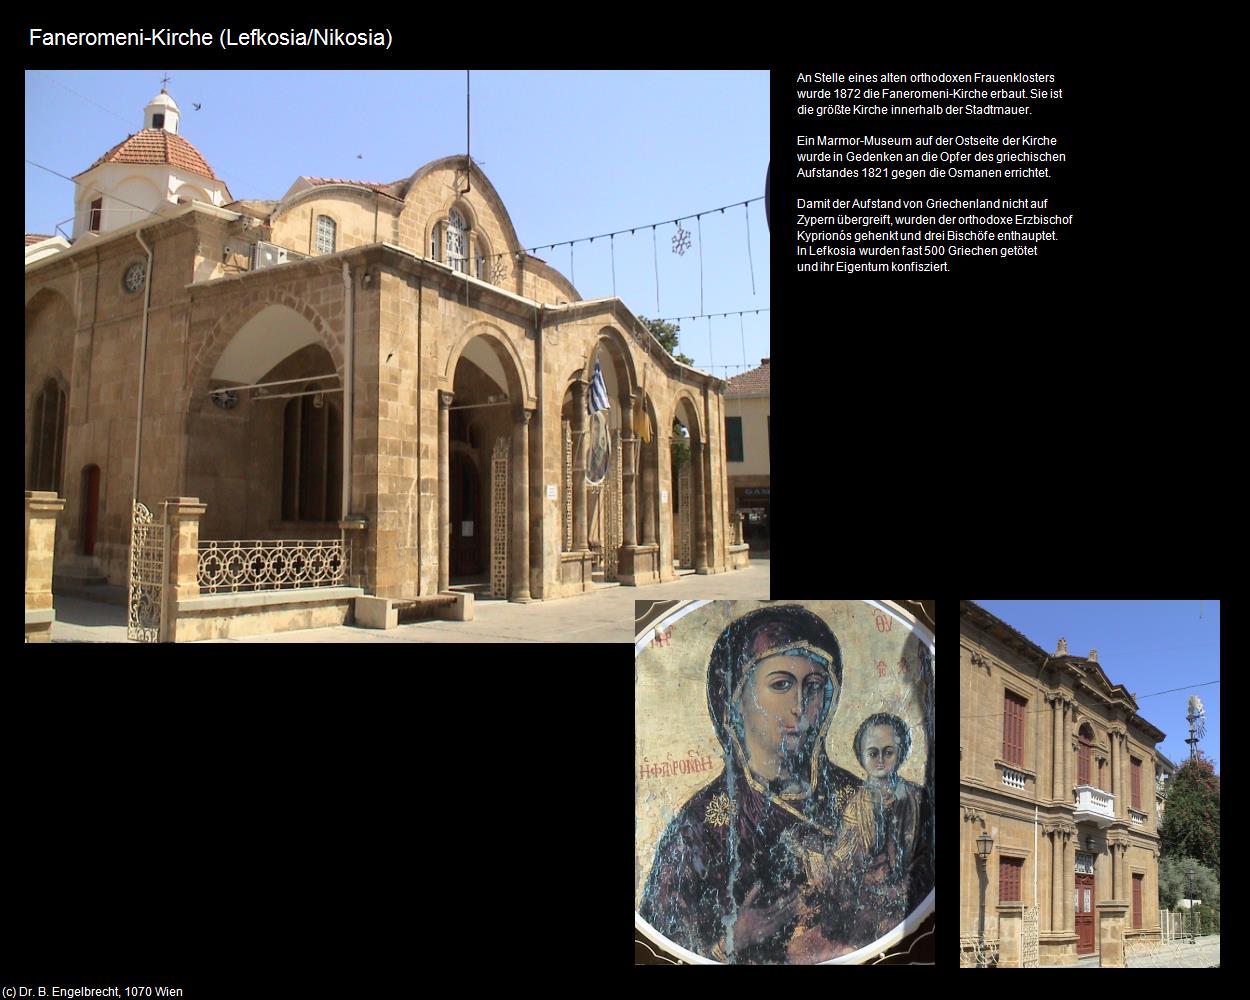 Faneromeni-Kirche (Lefkosia-Nikosia/CY) in ZYPERN-Insel der Aphrodite